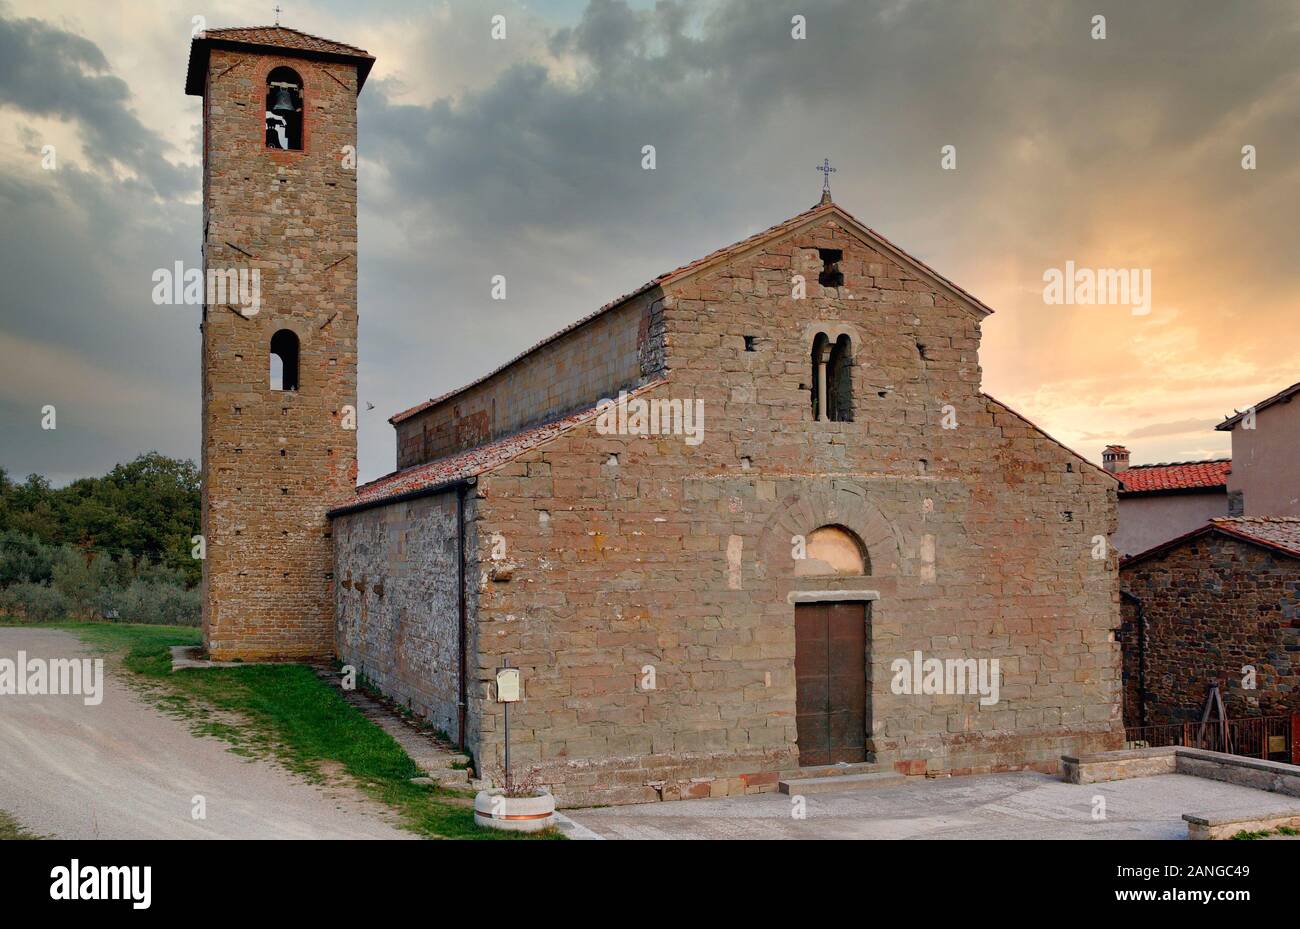 Pieve di Gaville, a country romanesque church in near Figline Valdarno, Tuscany, Italy Stock Photo